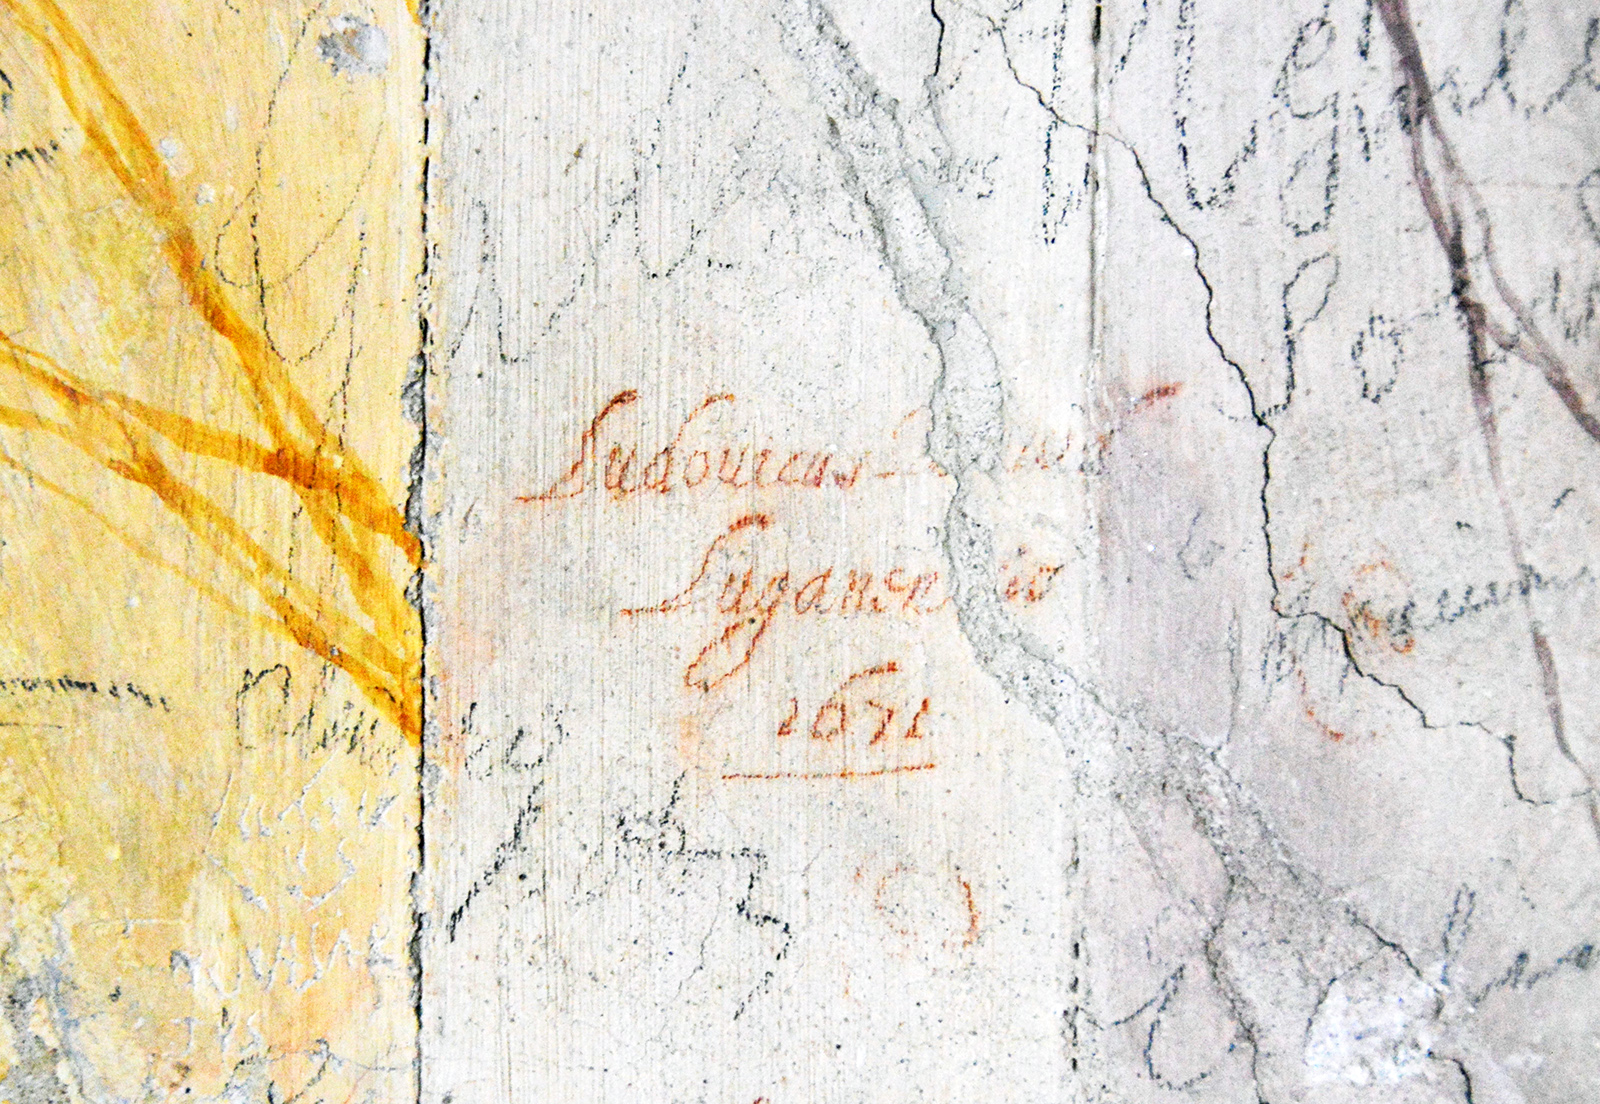 firma Ludovicus David Luganensis 1671 nella Galleria dei Mesi m low